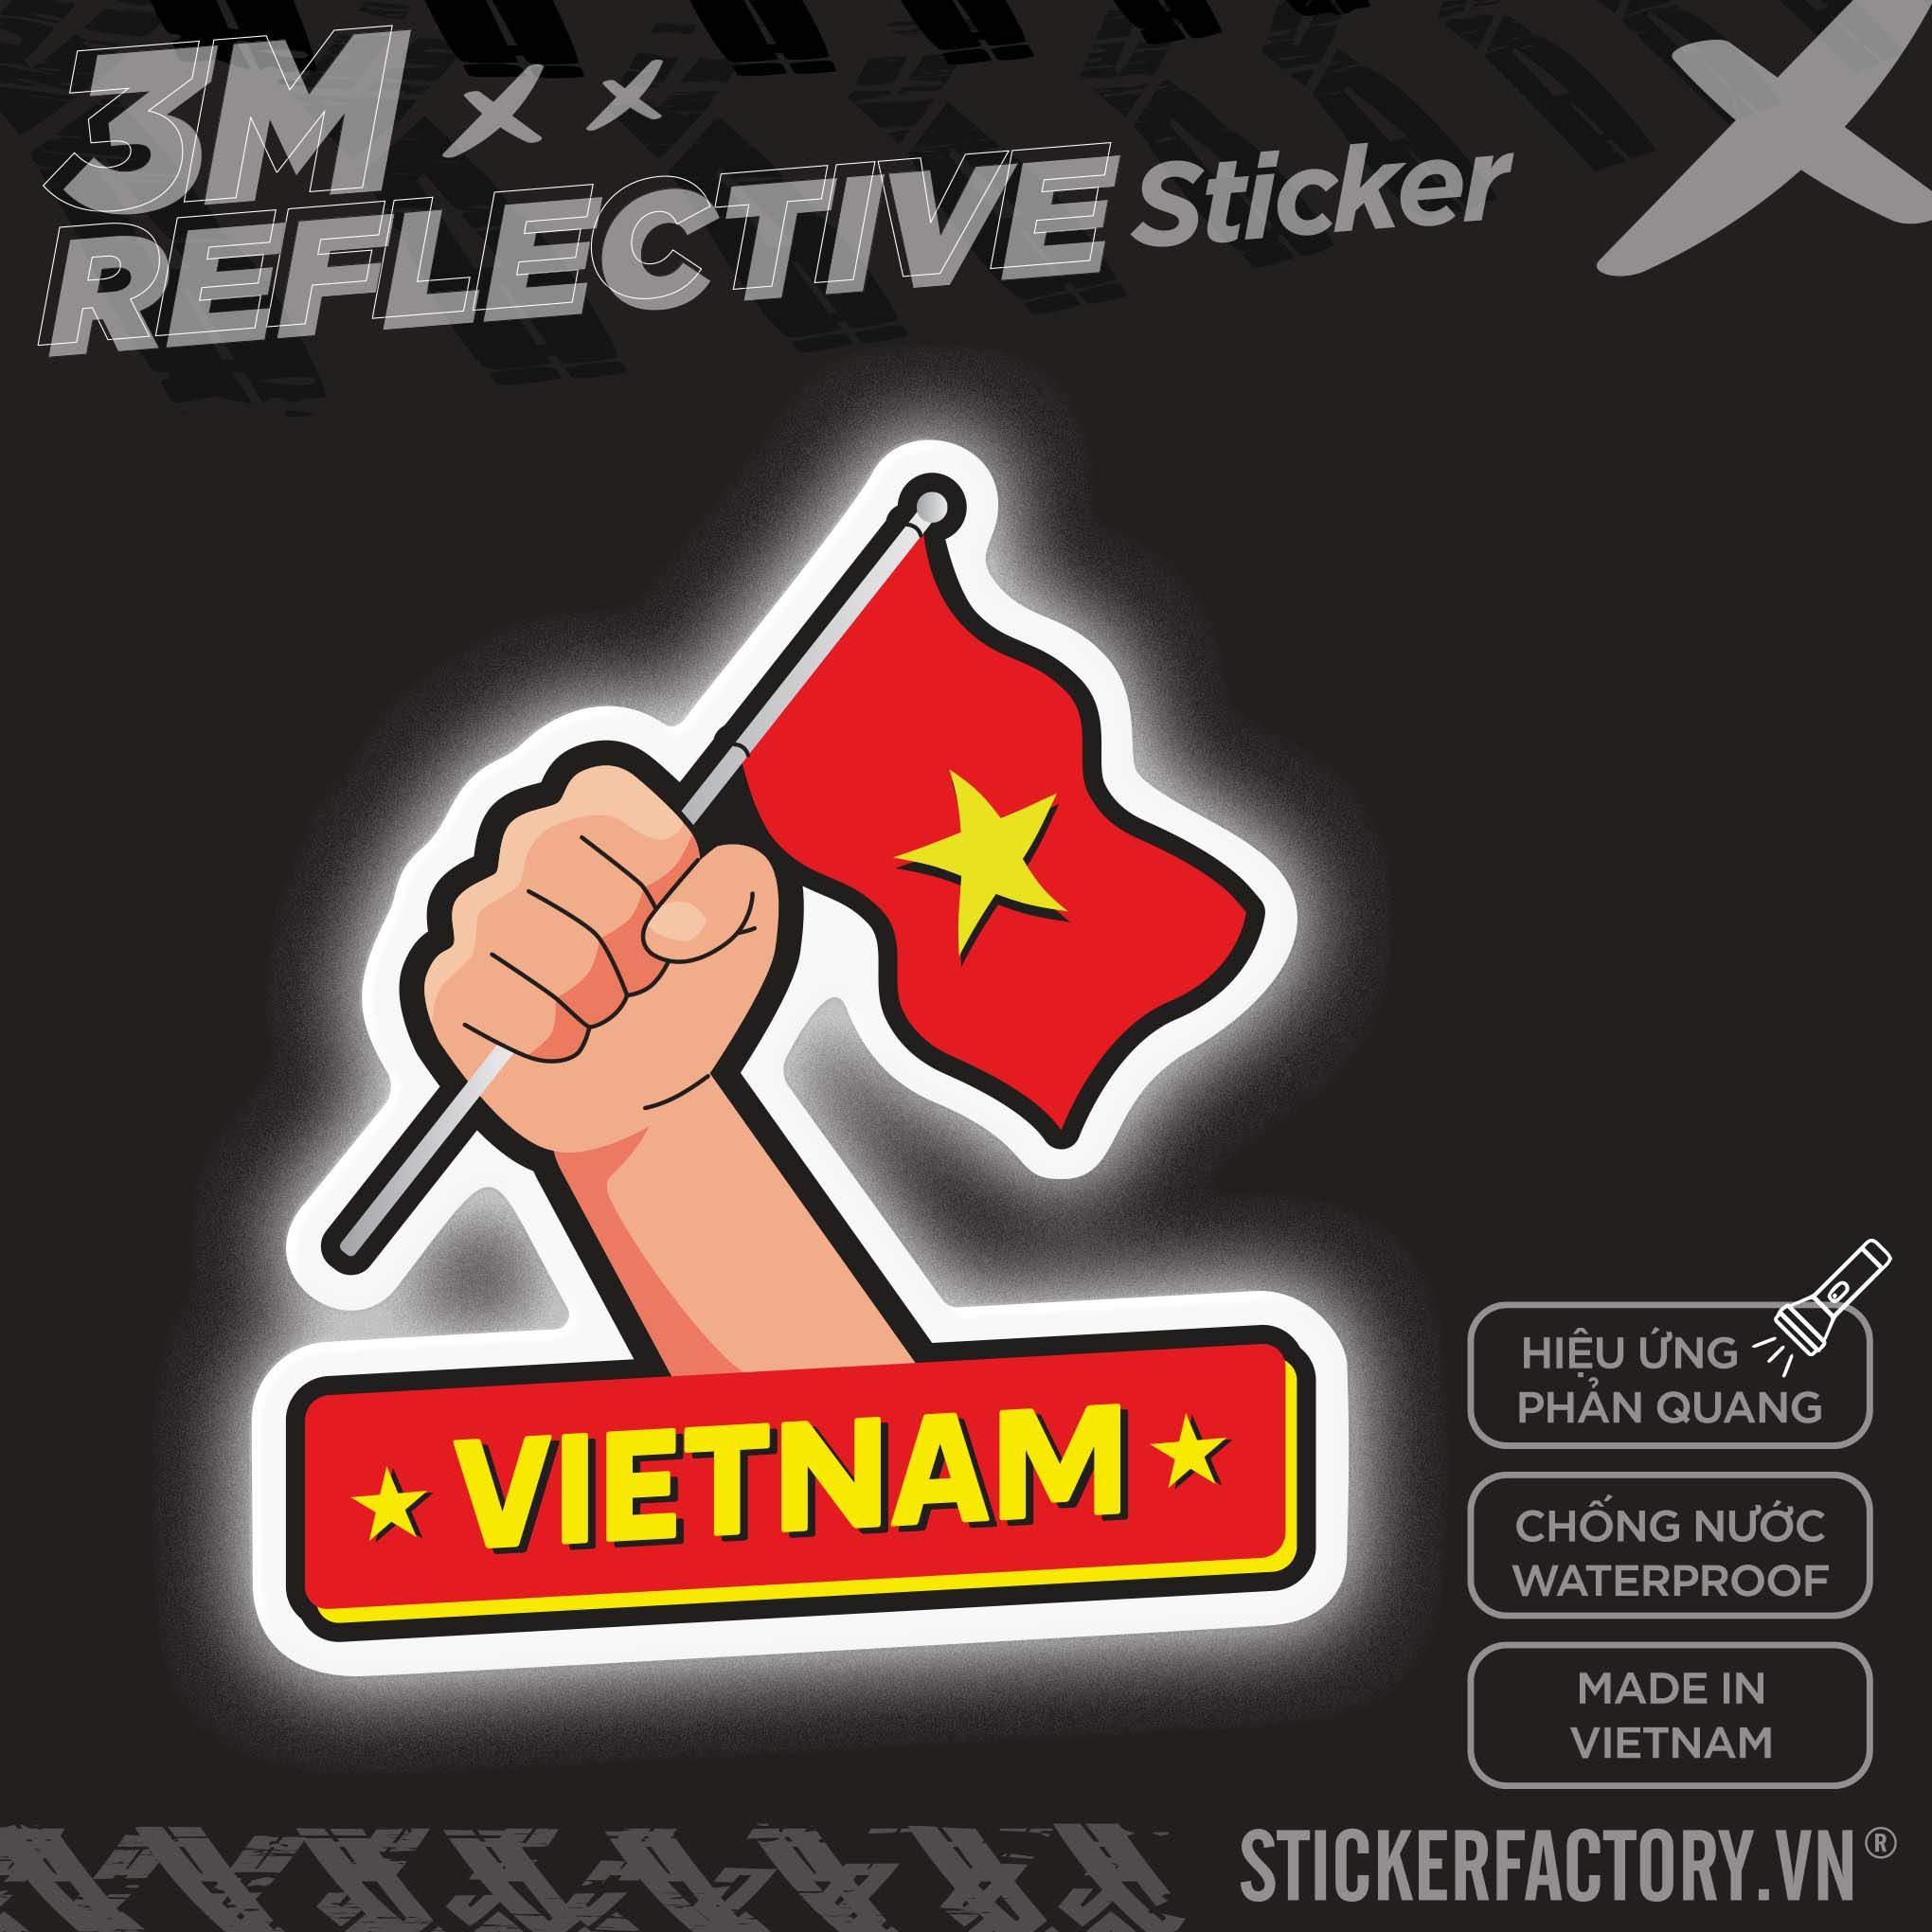 VIETNAM FLAG POWER HAND 3M - Reflective Sticker Die-cut